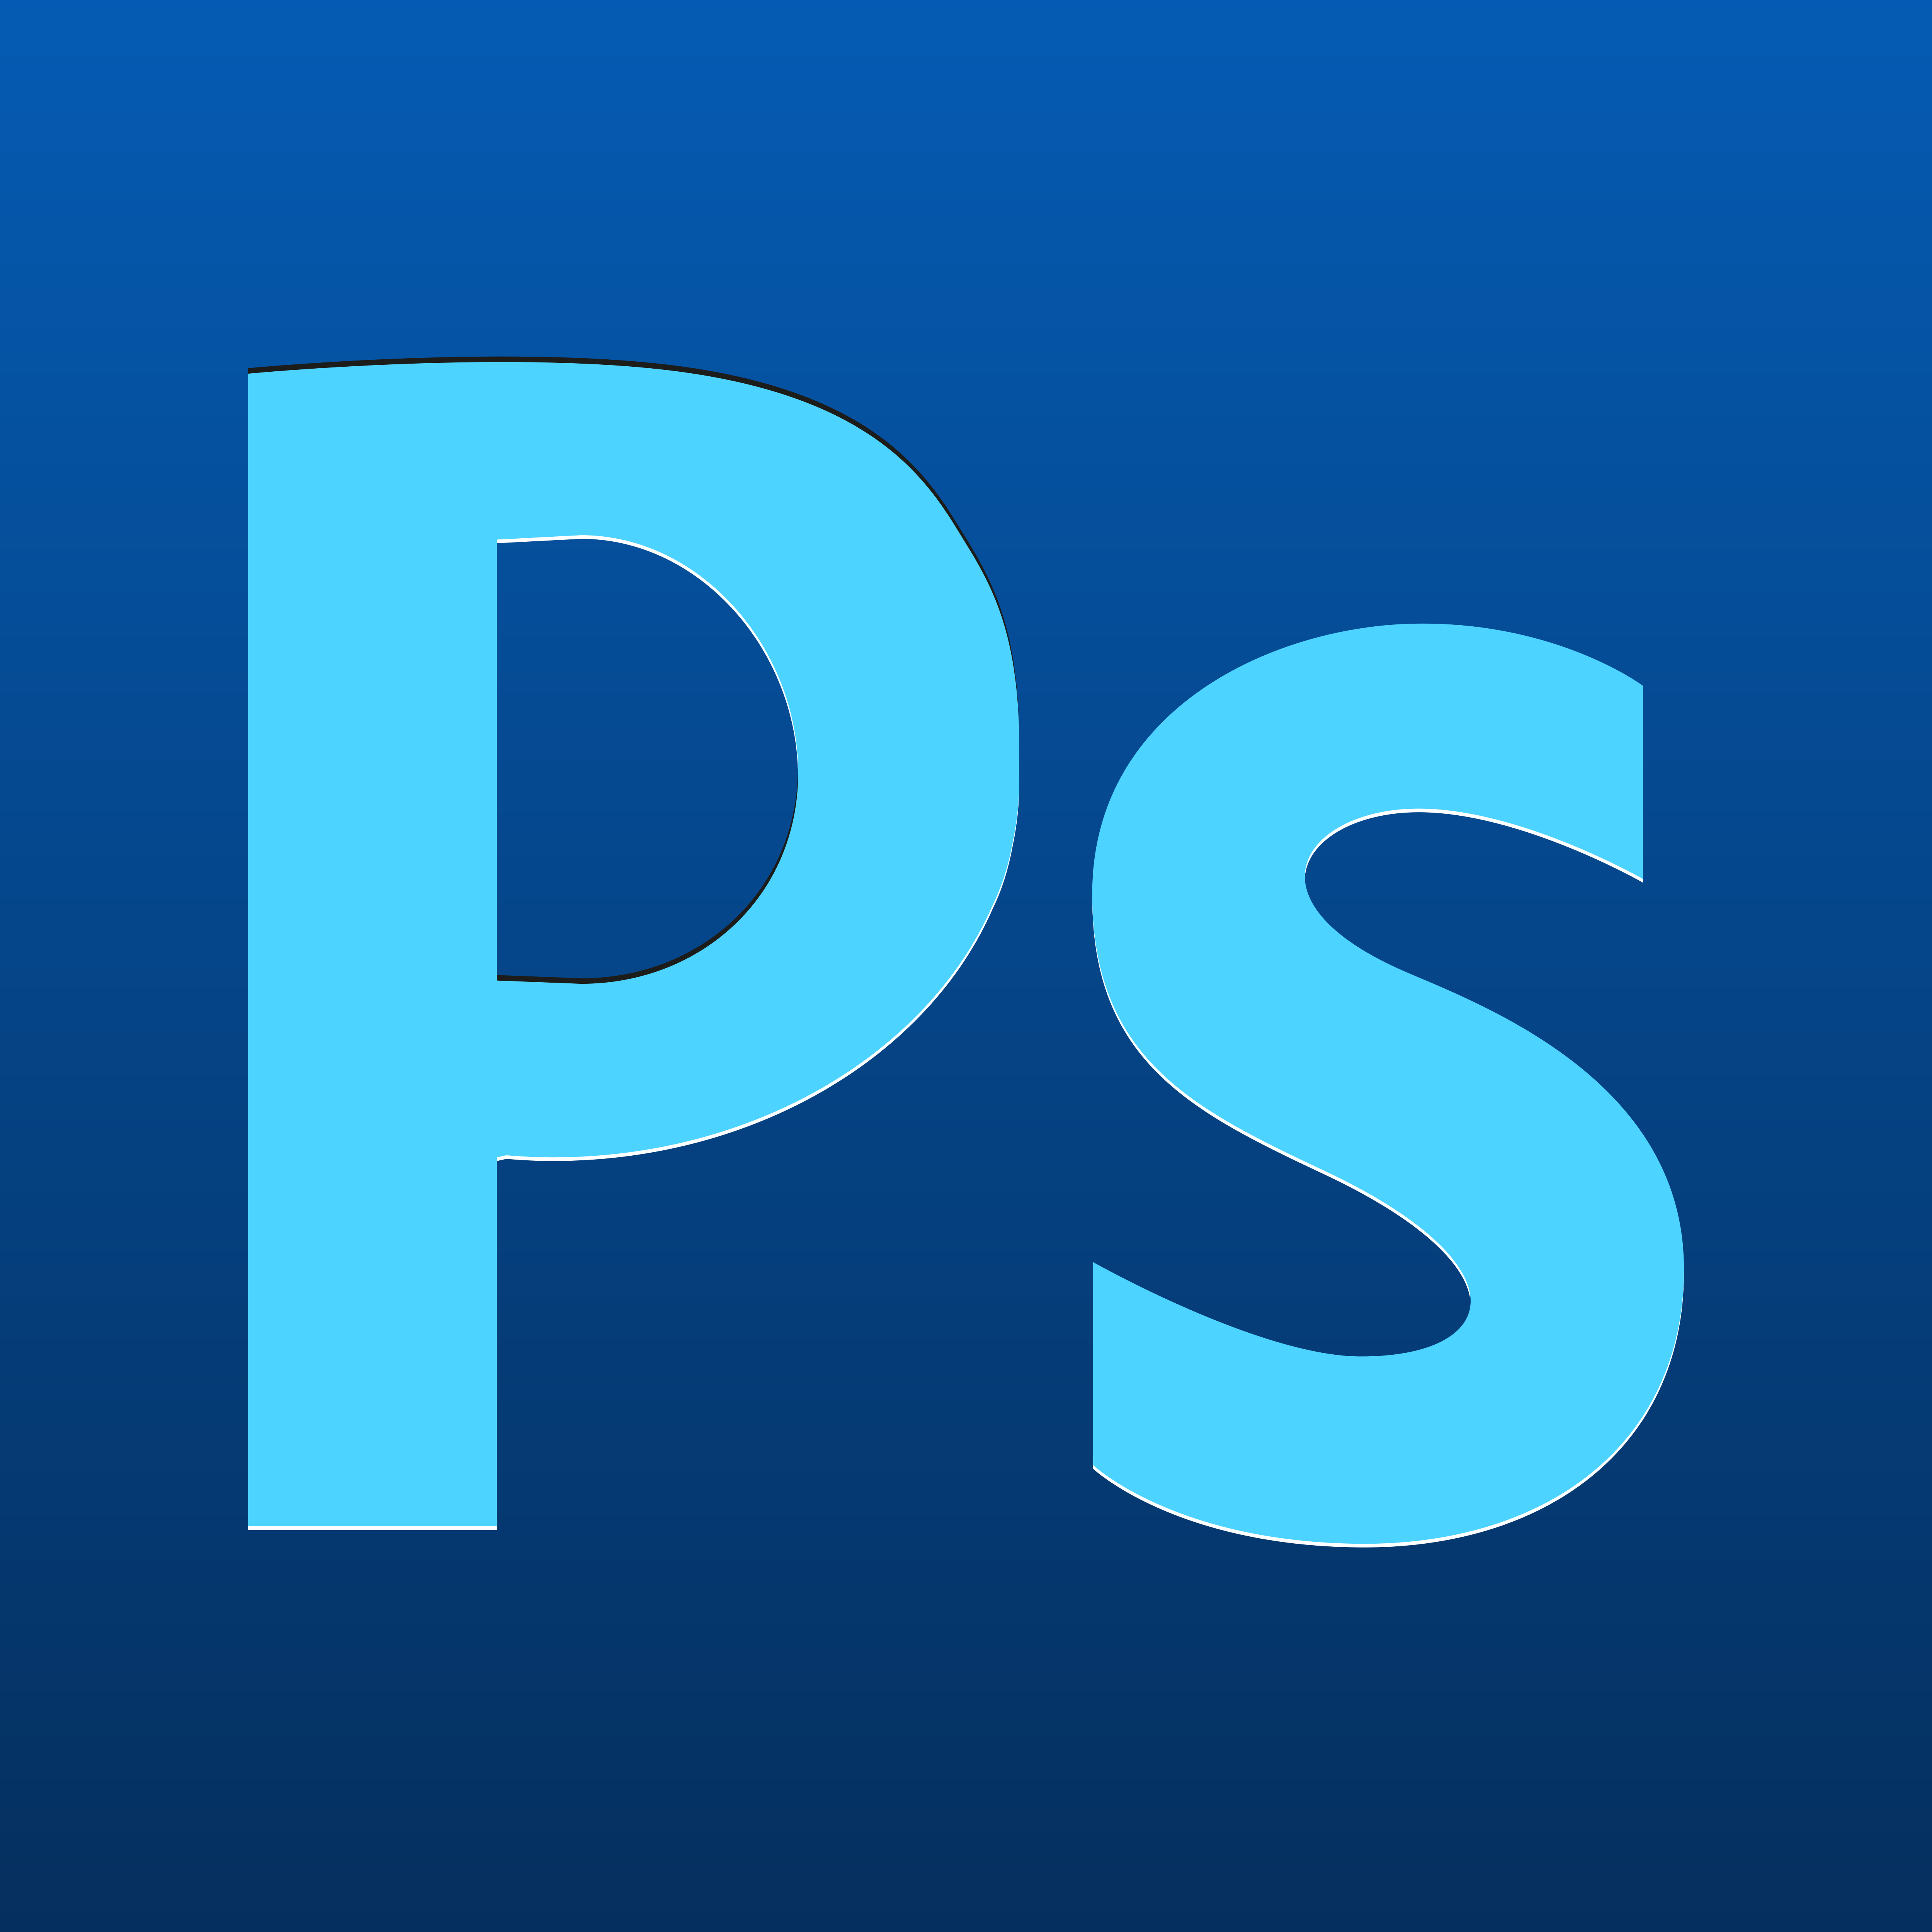 Adobe Photoshop – Logos Download